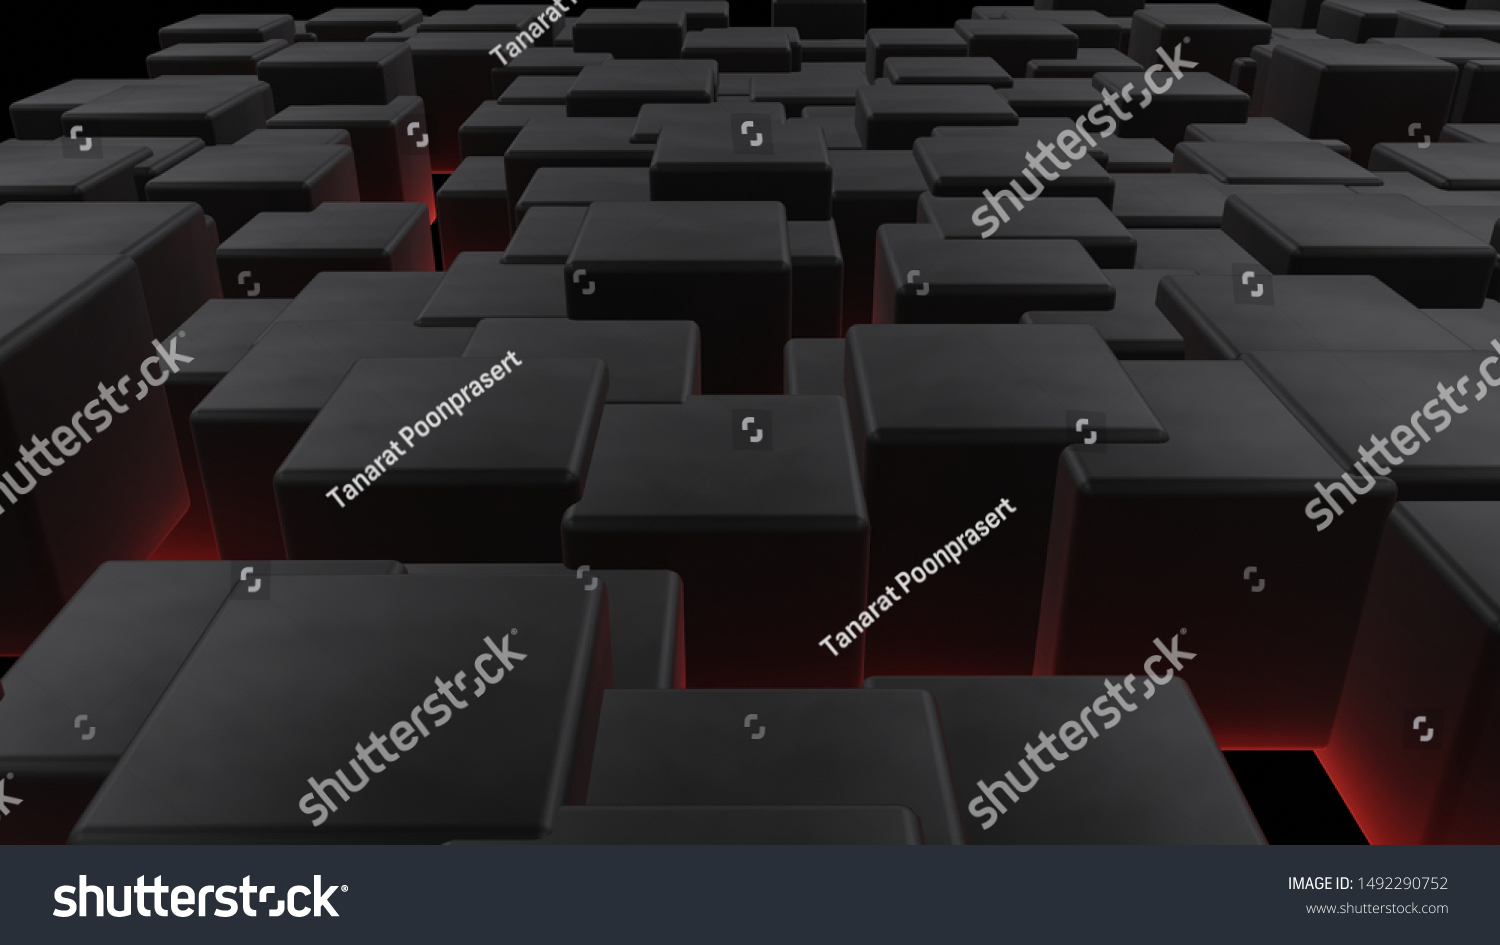 3d Black Cube Redlight Bottom のイラスト素材 1492290752